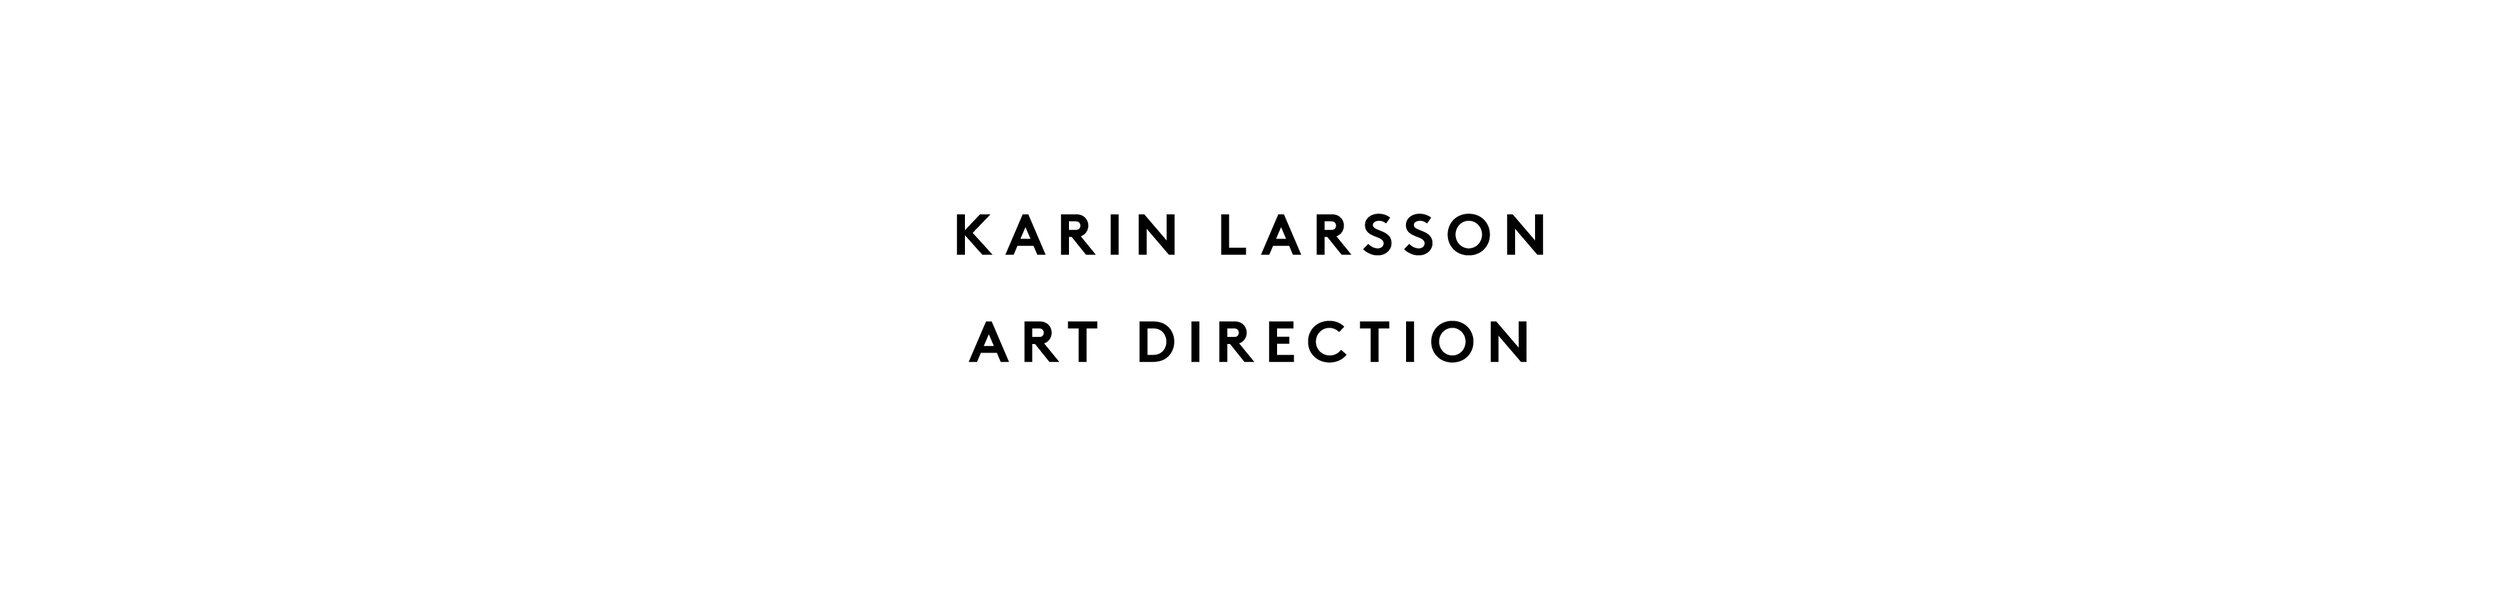 Karin Larsson Art Direction